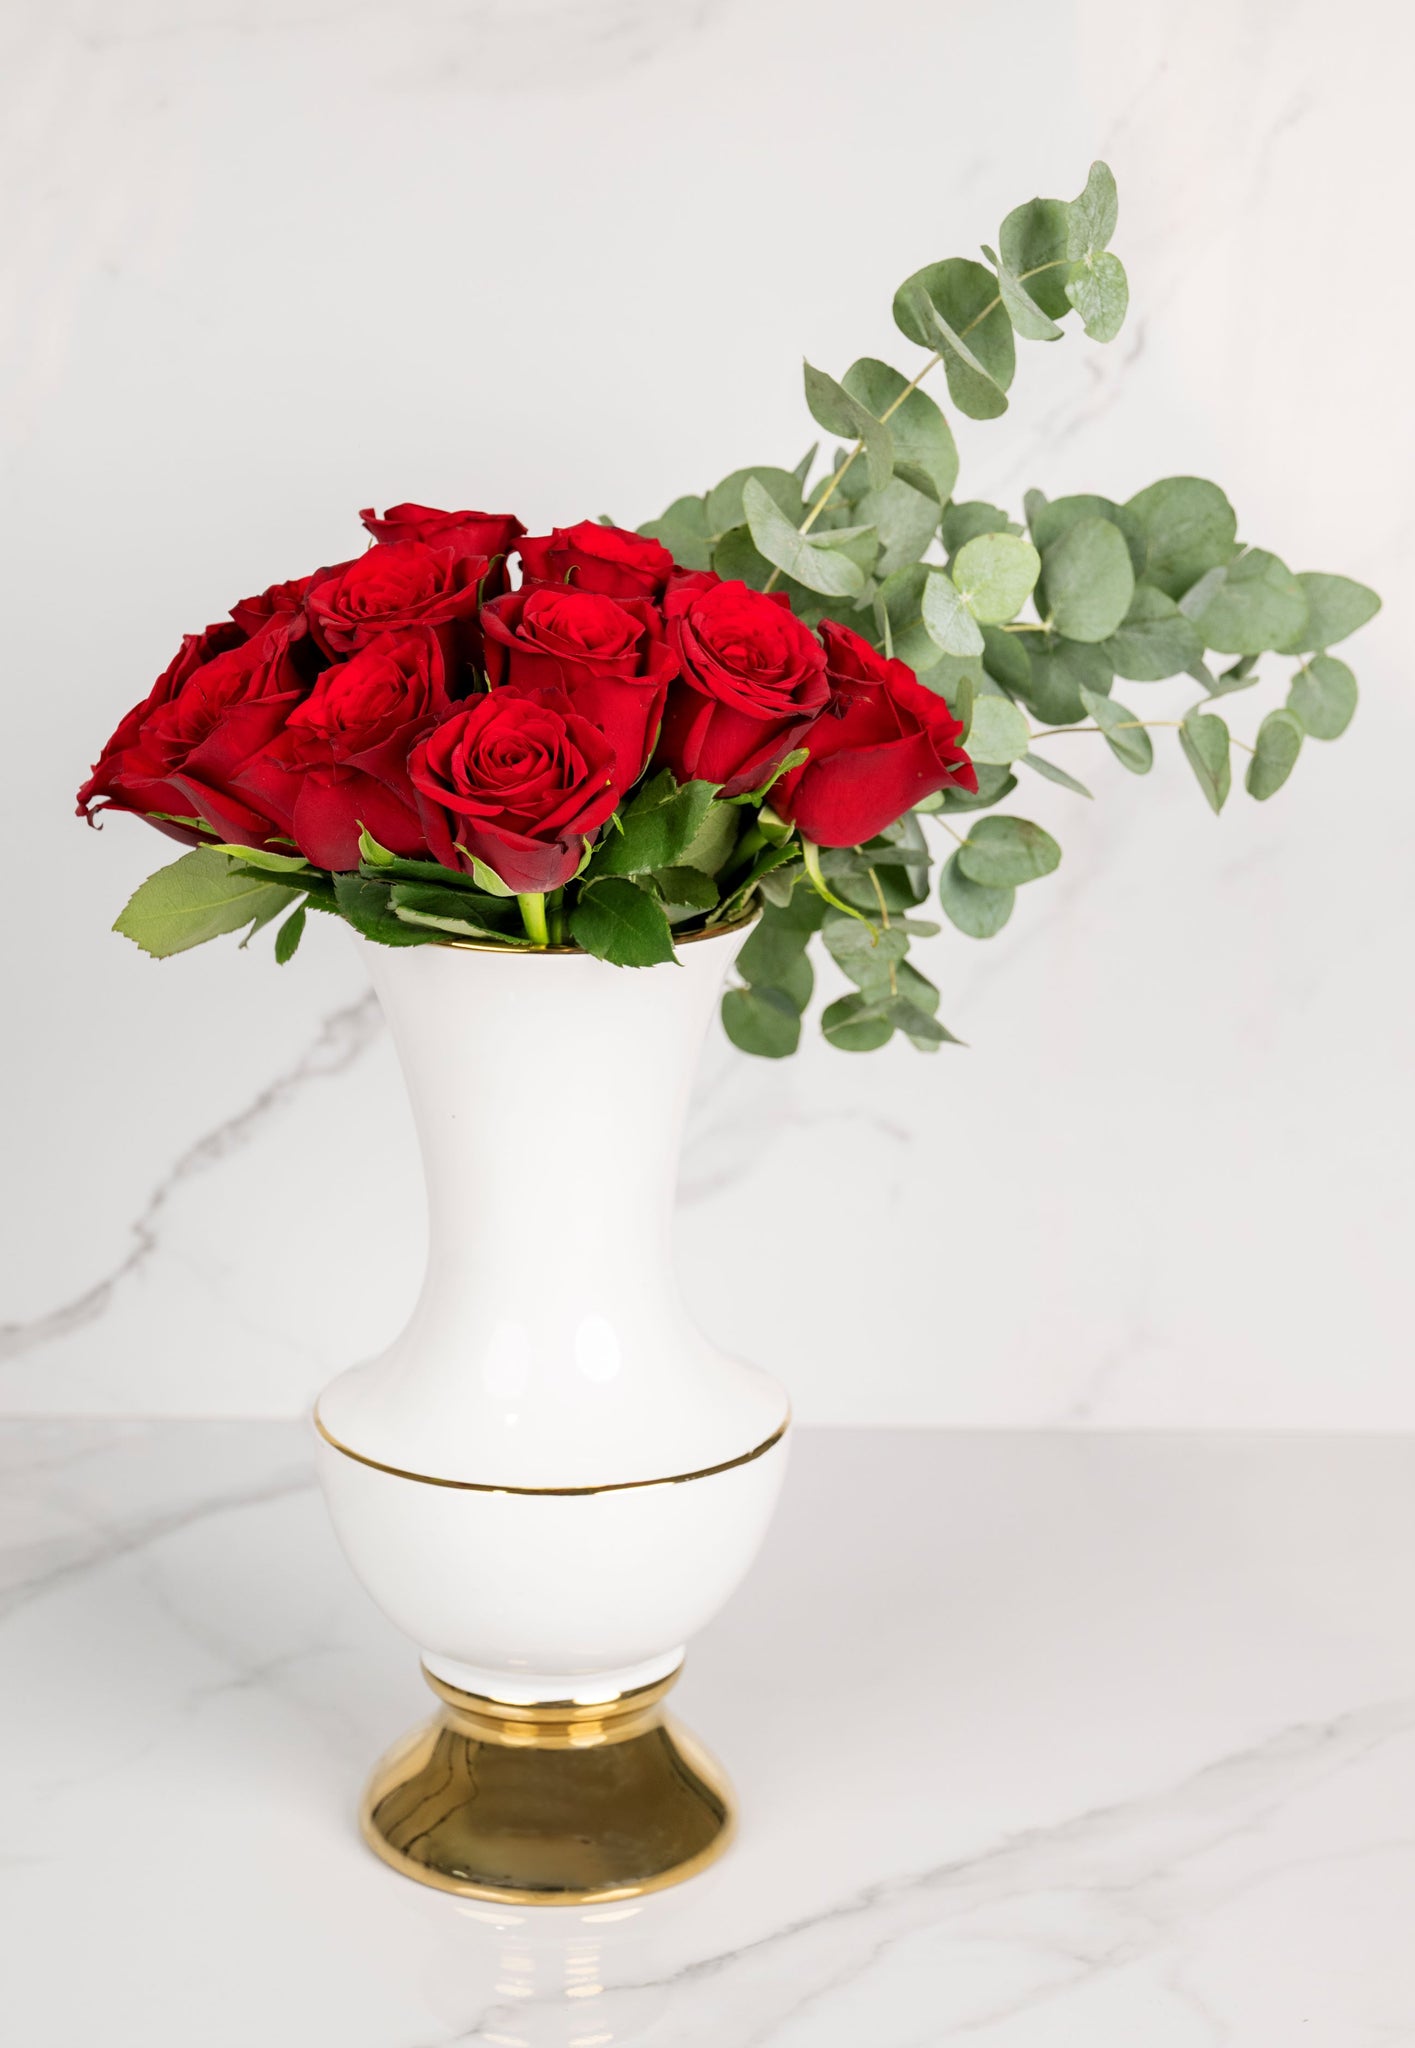 Elegant Flower Arrangement in a Vase